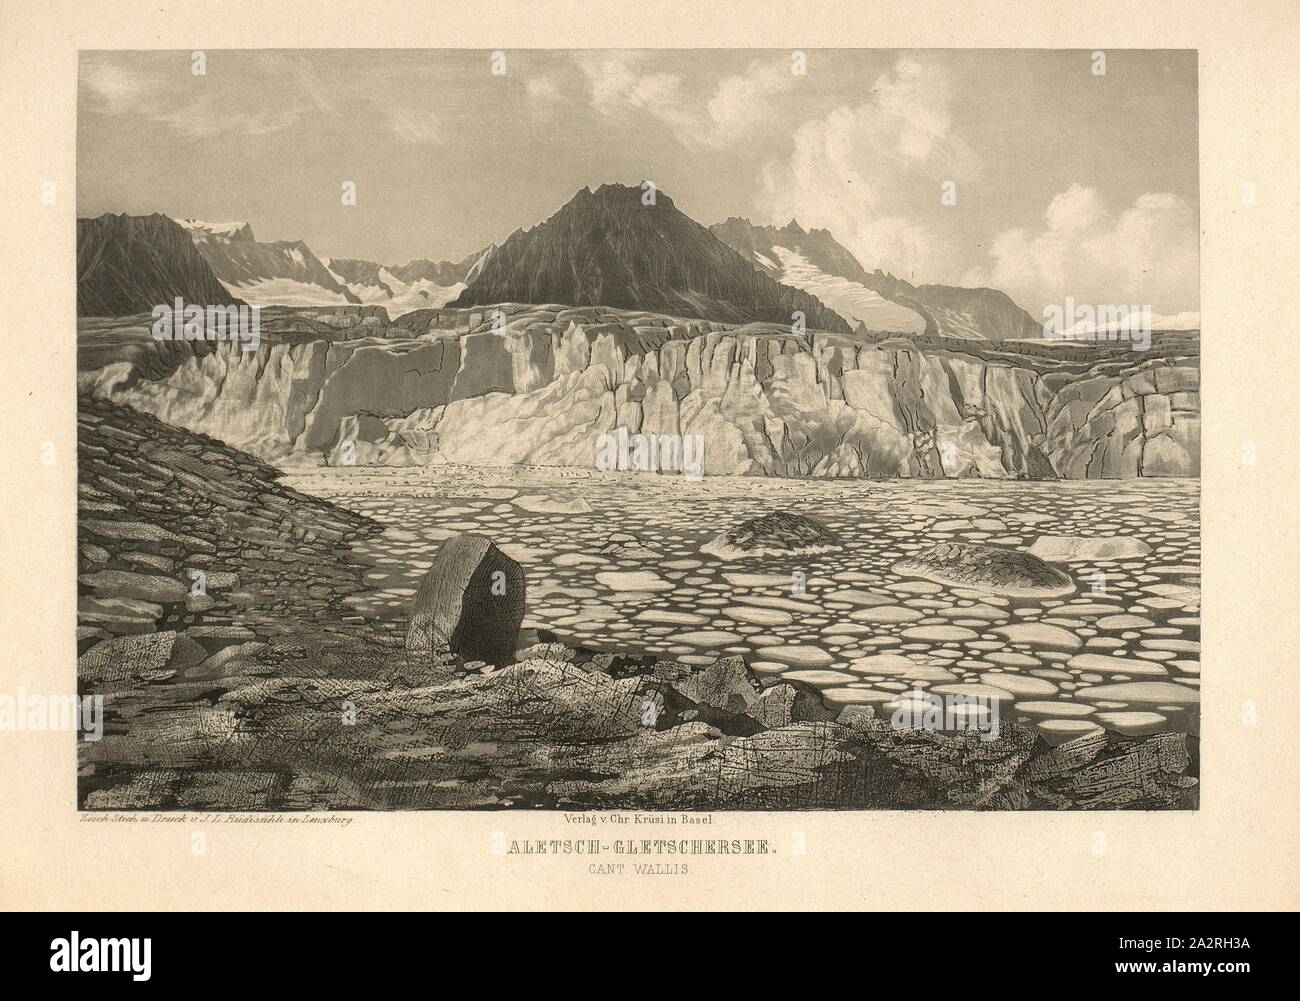 Aletsch-Gletschersee Cant Wallis., Aletsch Glacier Lake with ice floes in the canton of Valais, according to p. 219, p. 207, Rüdisühli, J. L. (del., sc. et imp.), 1870, Eduard Osenbrüggen: Das Hochgebirge der Schweiz: Prachtwerk mit 52 der interessantesten Ansichten aus dem Alpen-, Gletscher- und Felsengebiete. Basel: Krüsi, [18 Stock Photo